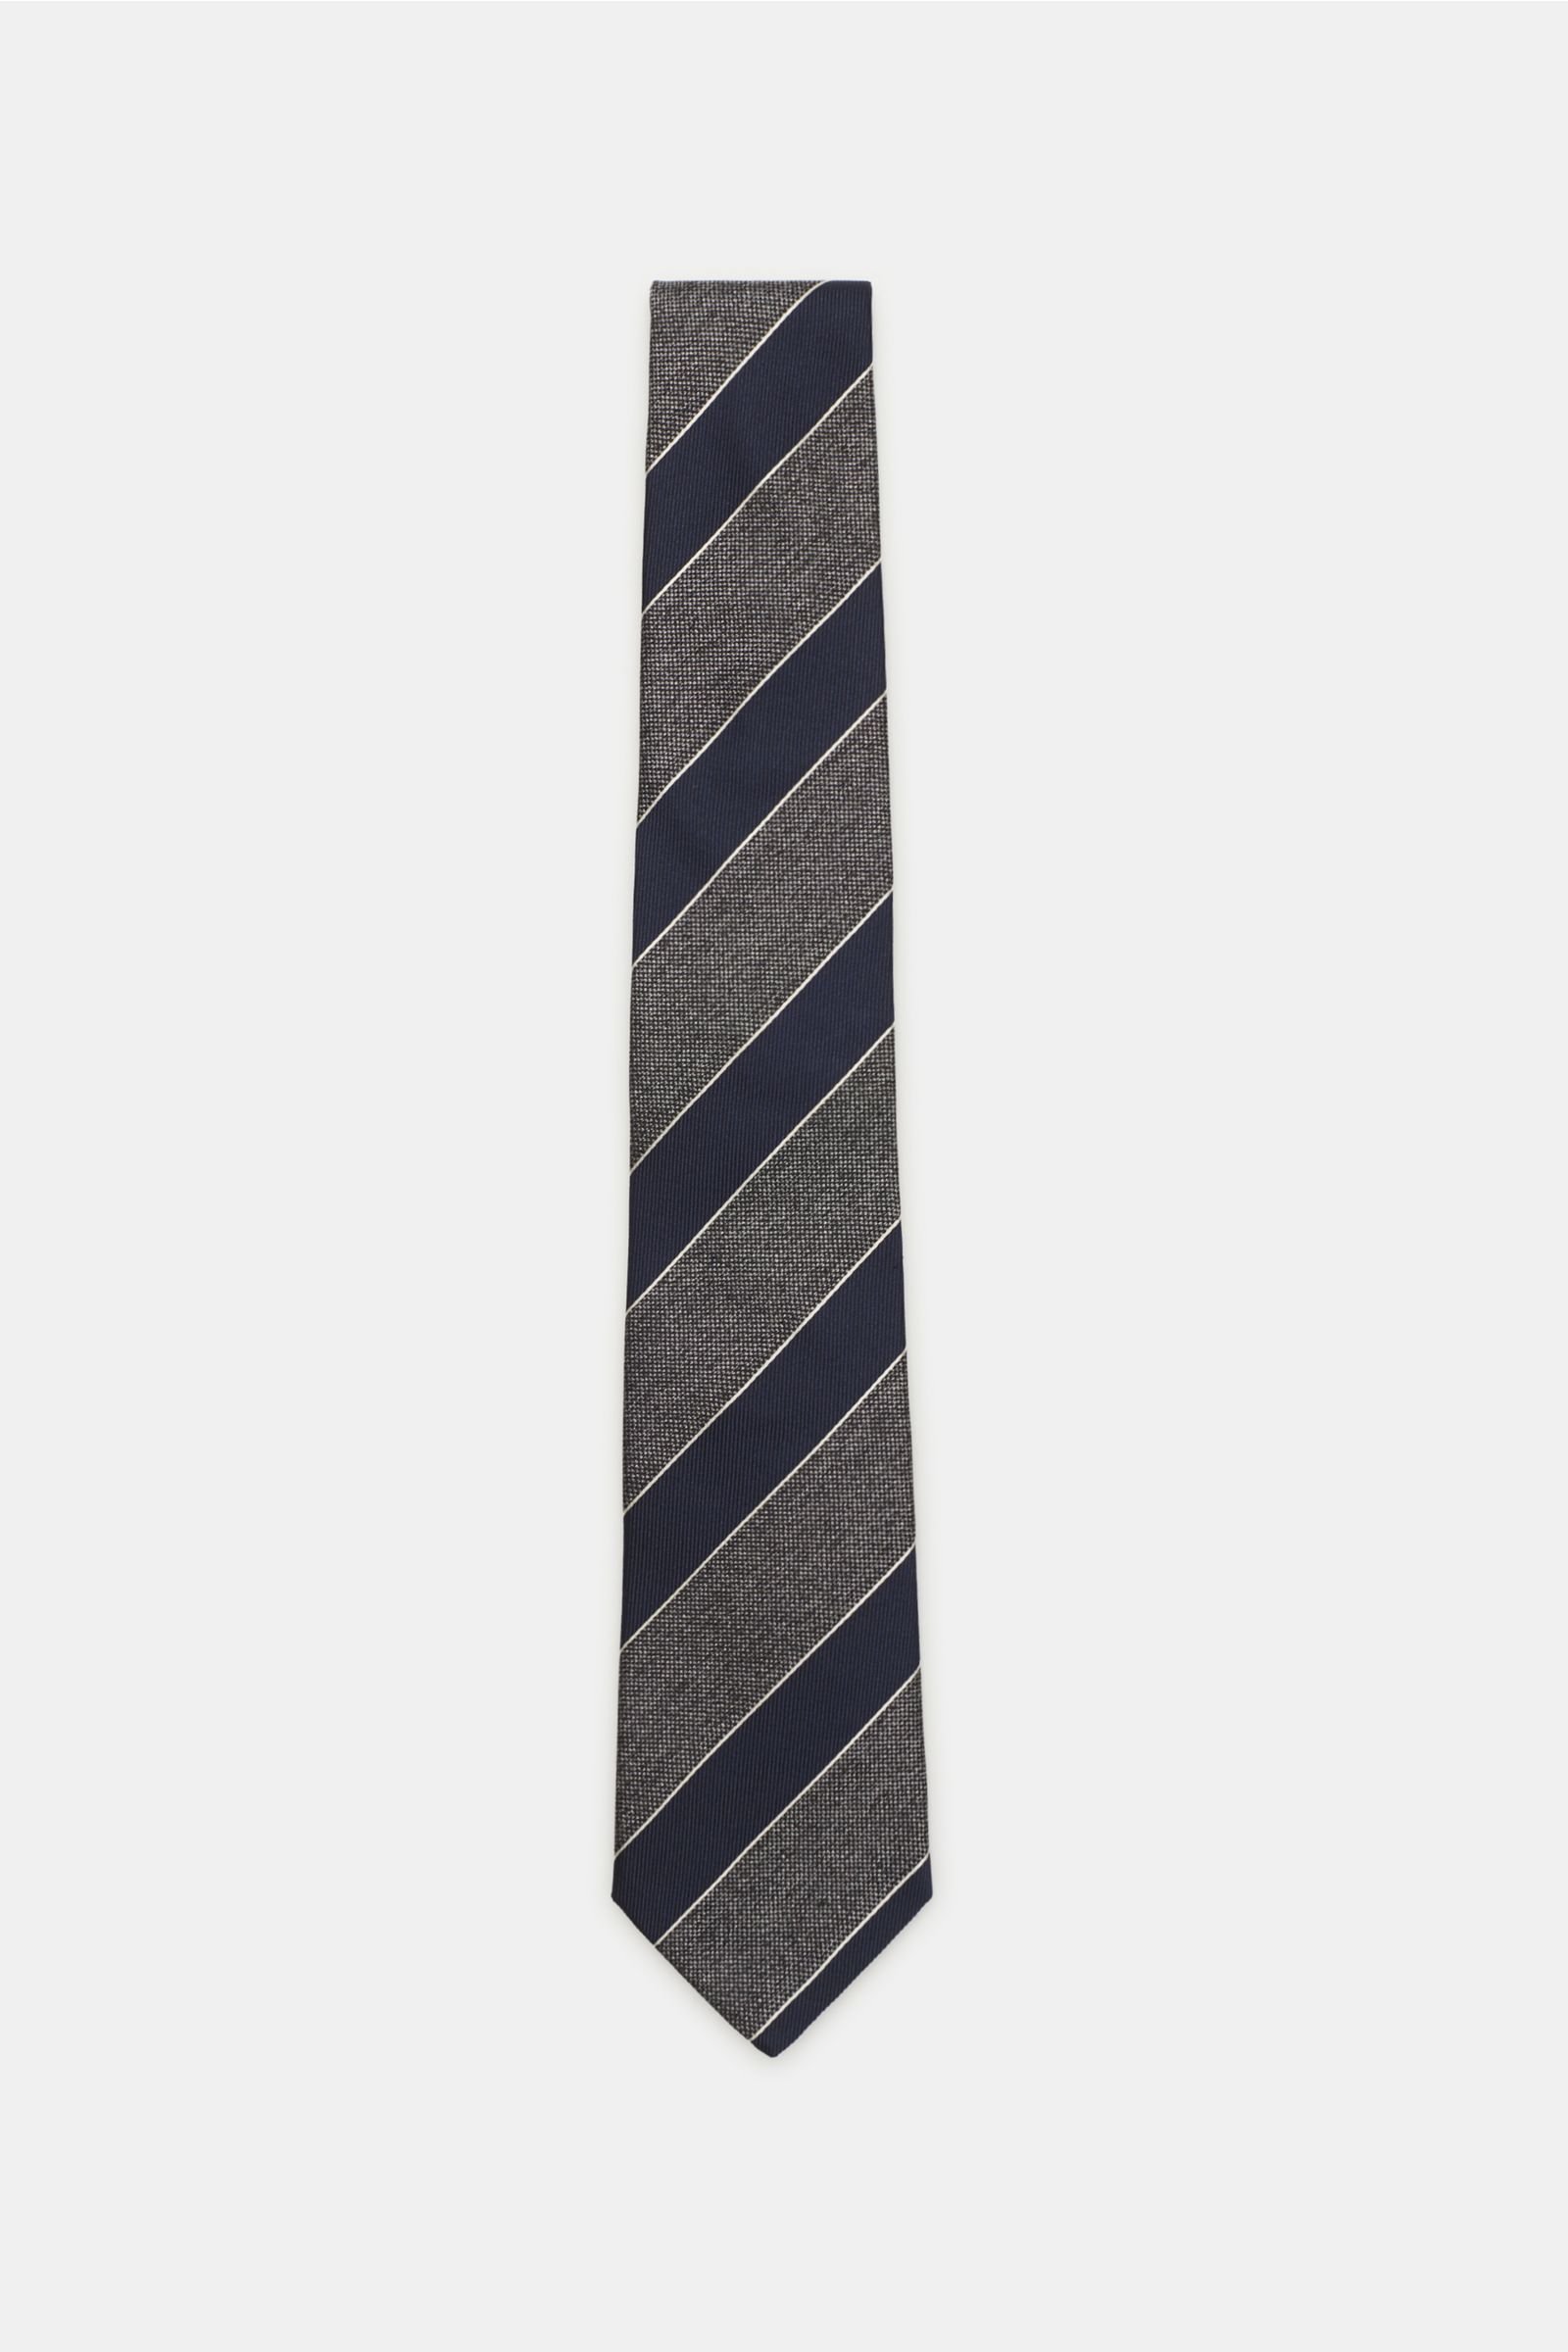 Silk tie dark grey/navy striped